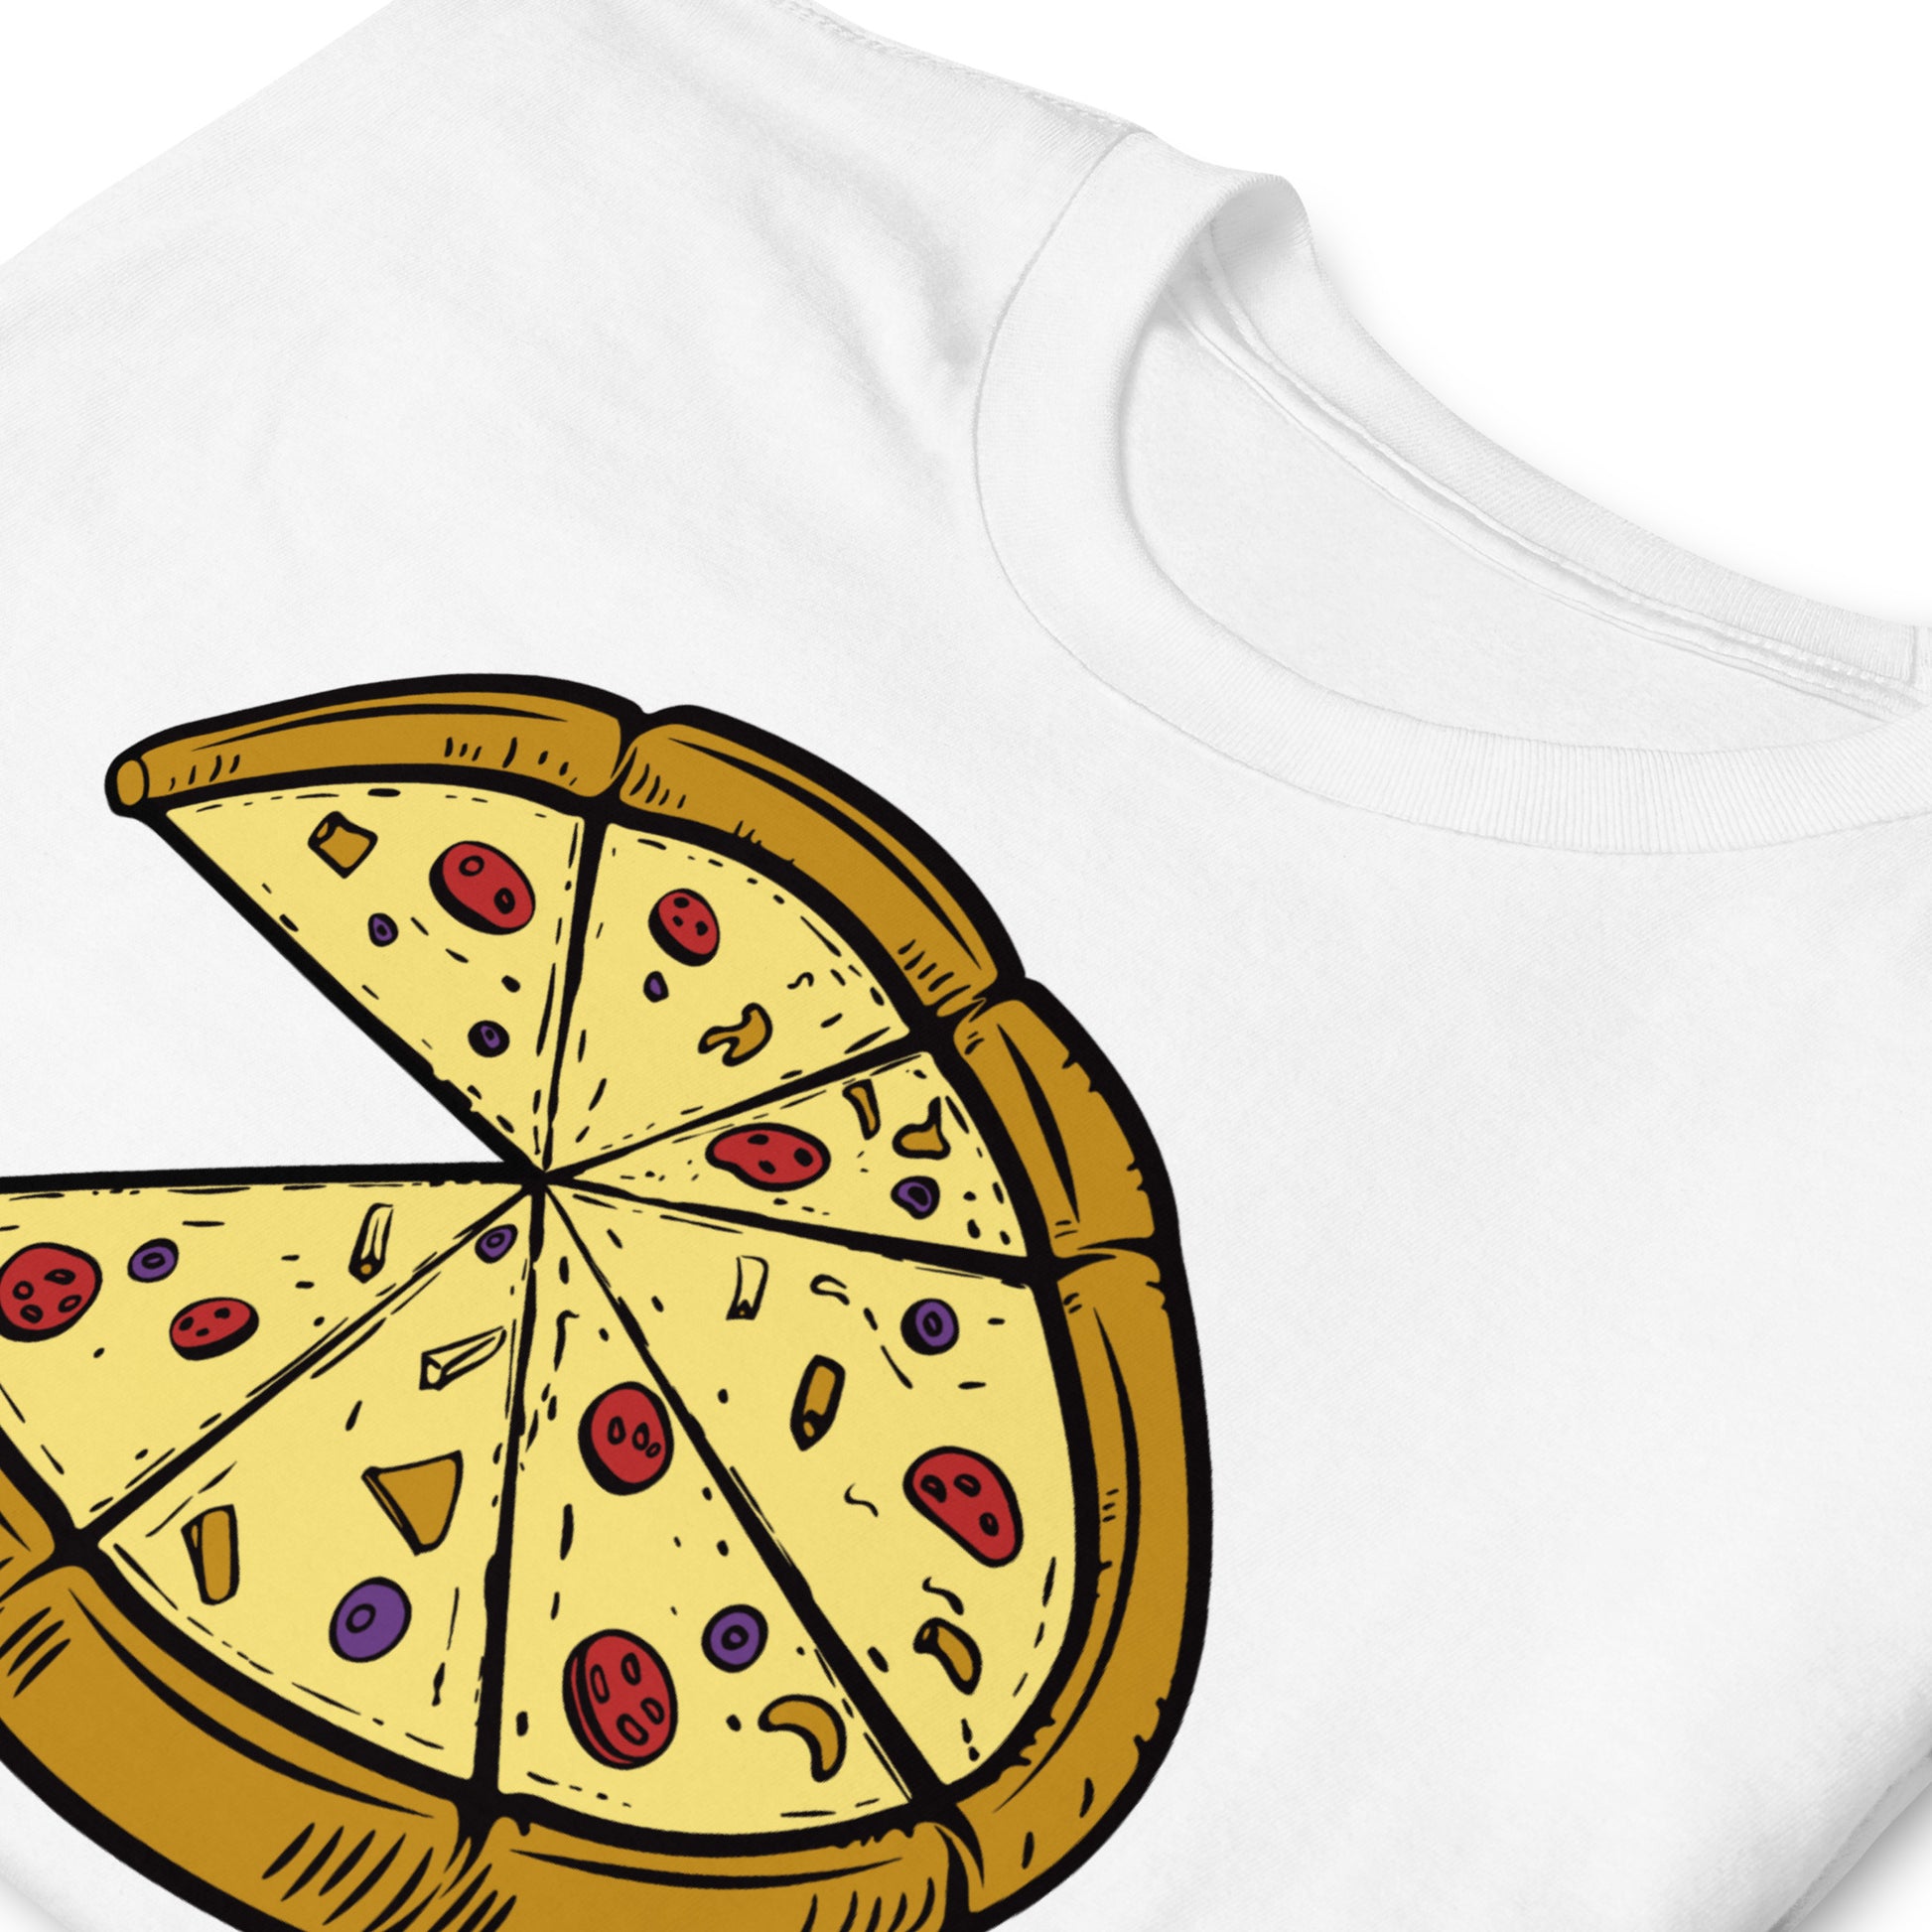 Camiseta Pizza - Padres